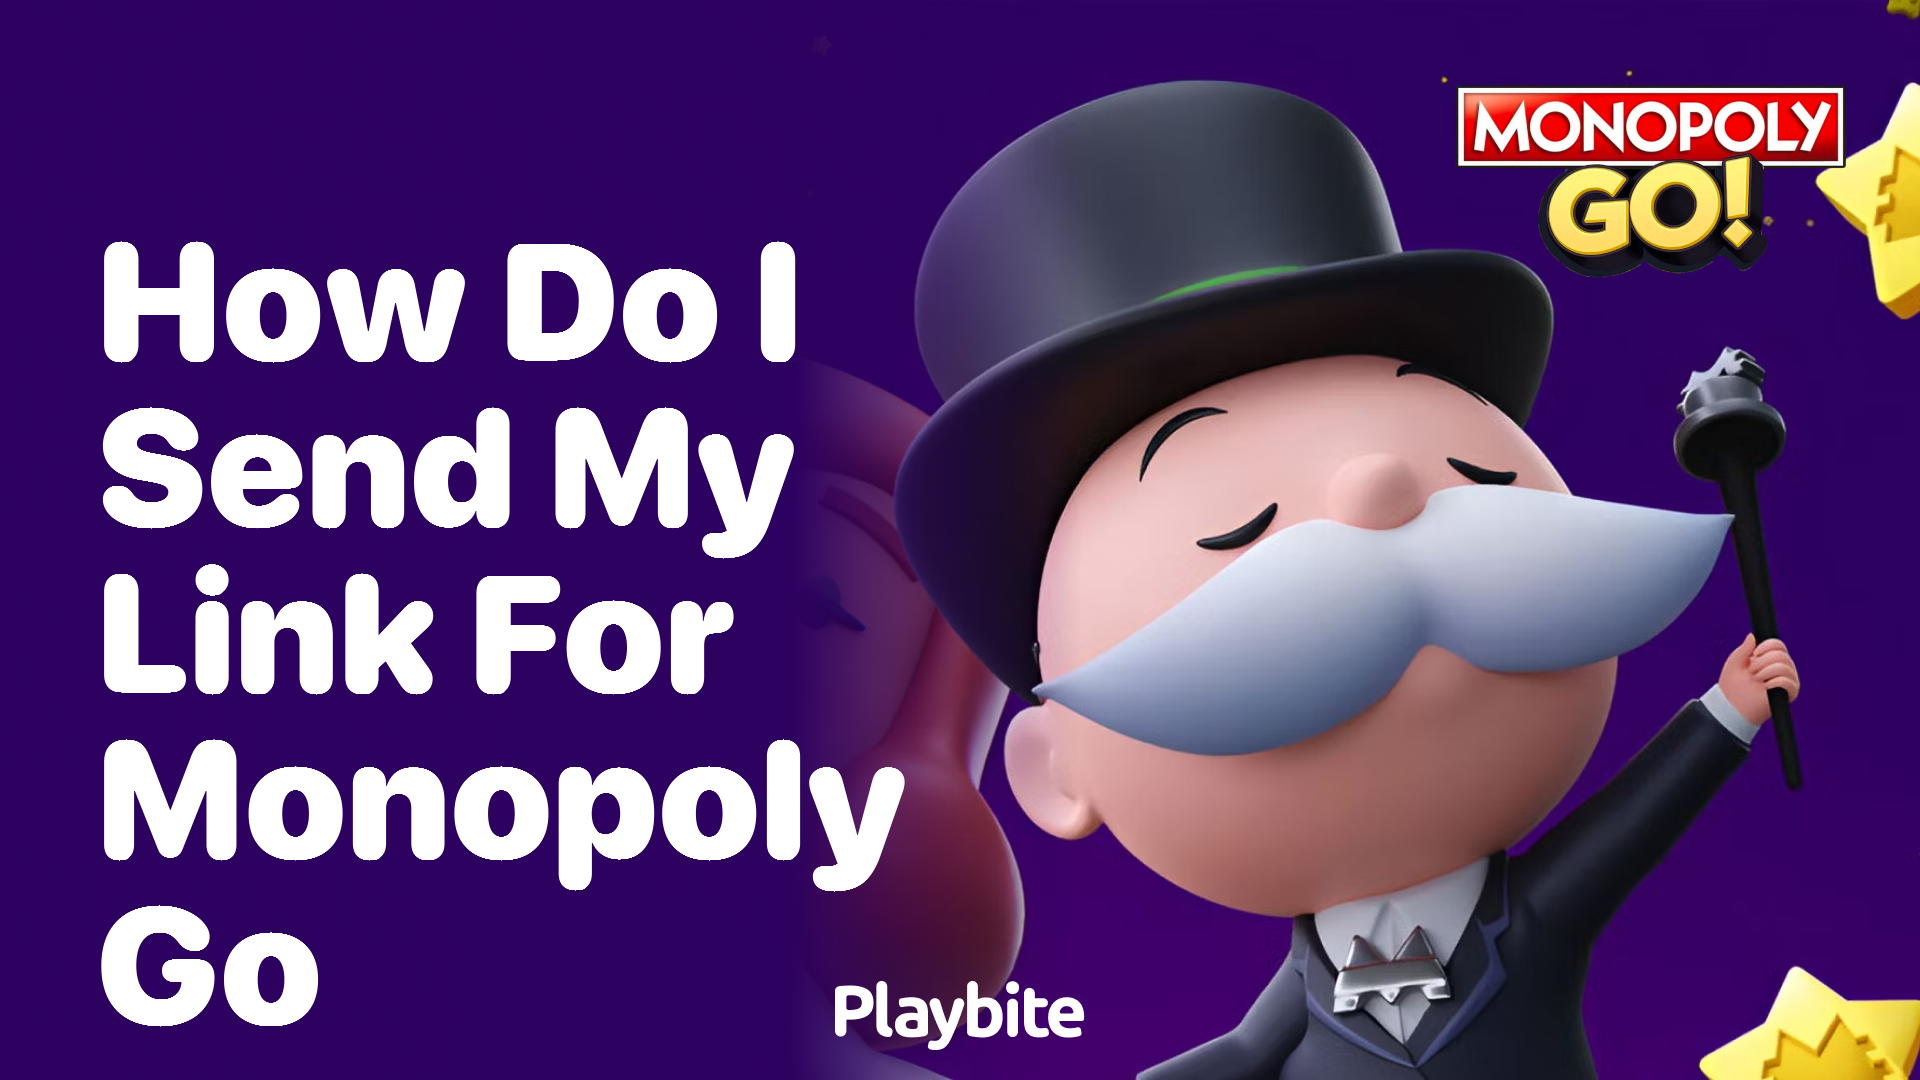 How Do I Send My Link for Monopoly Go?